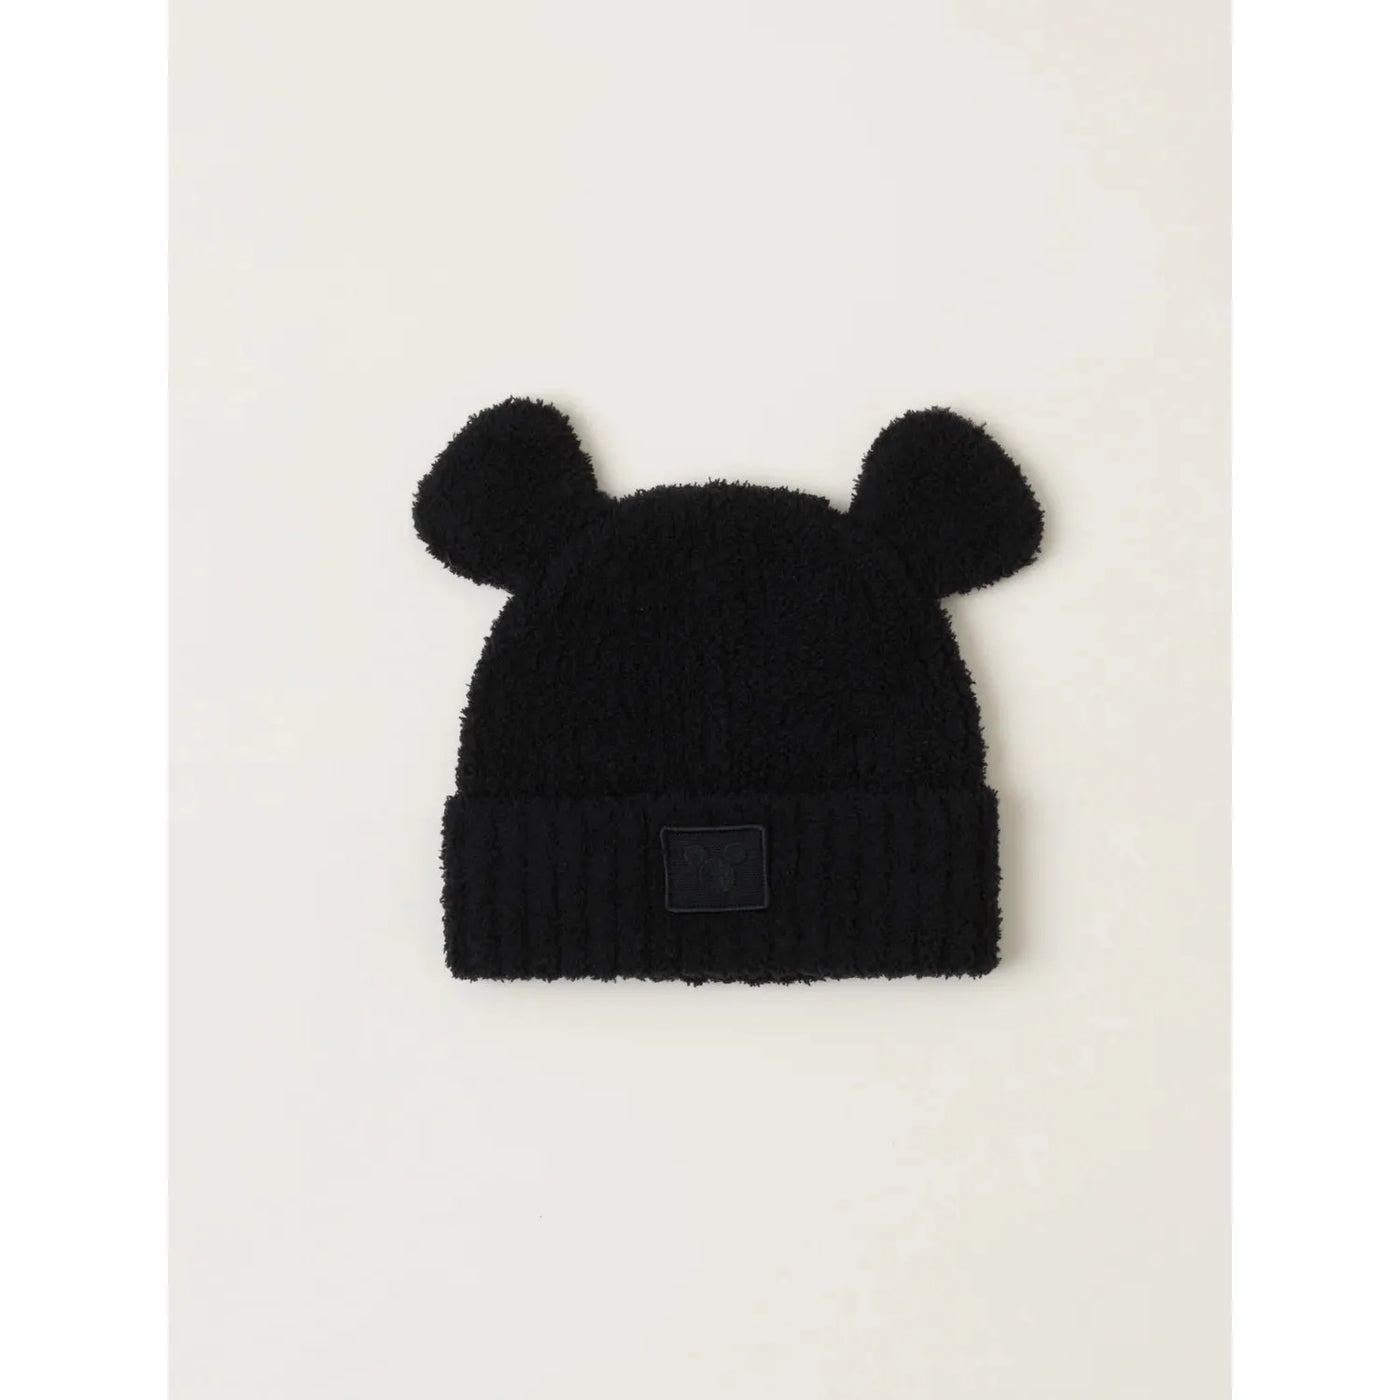  Black CozyChic® Disney Mickey Mouse Ears Kids Beanie